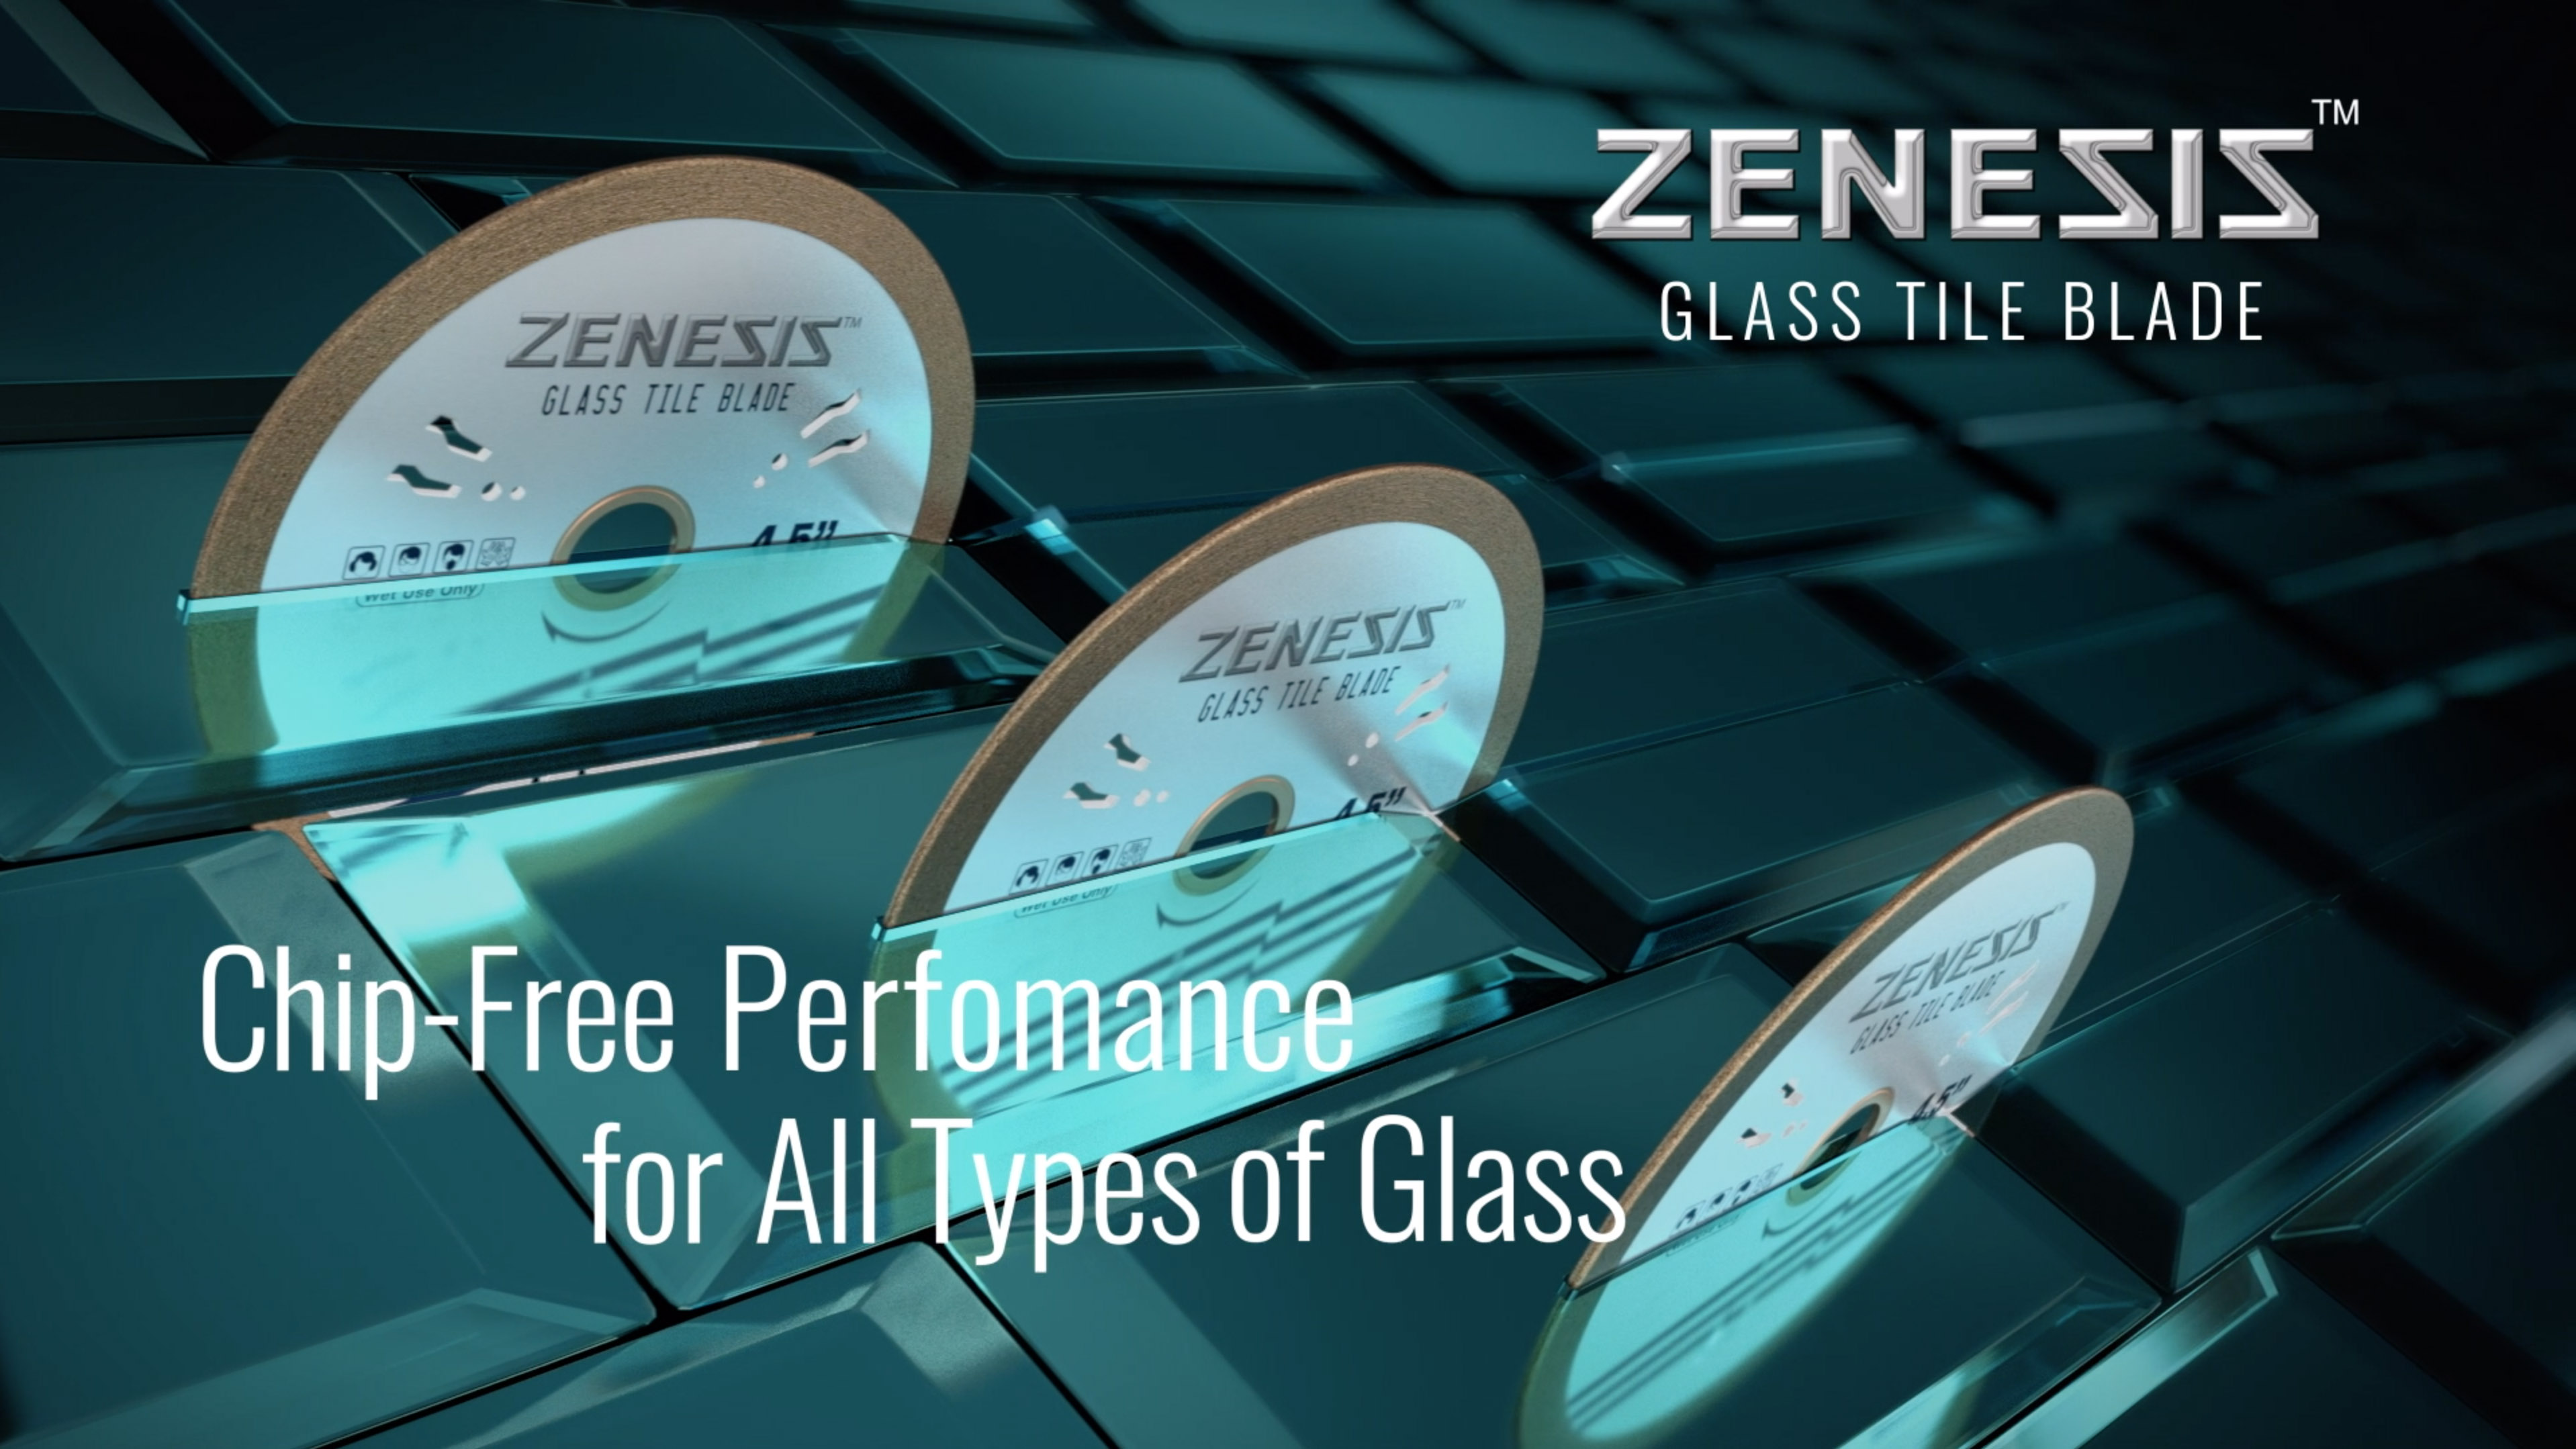 Zenesis Glass Tile Product shot